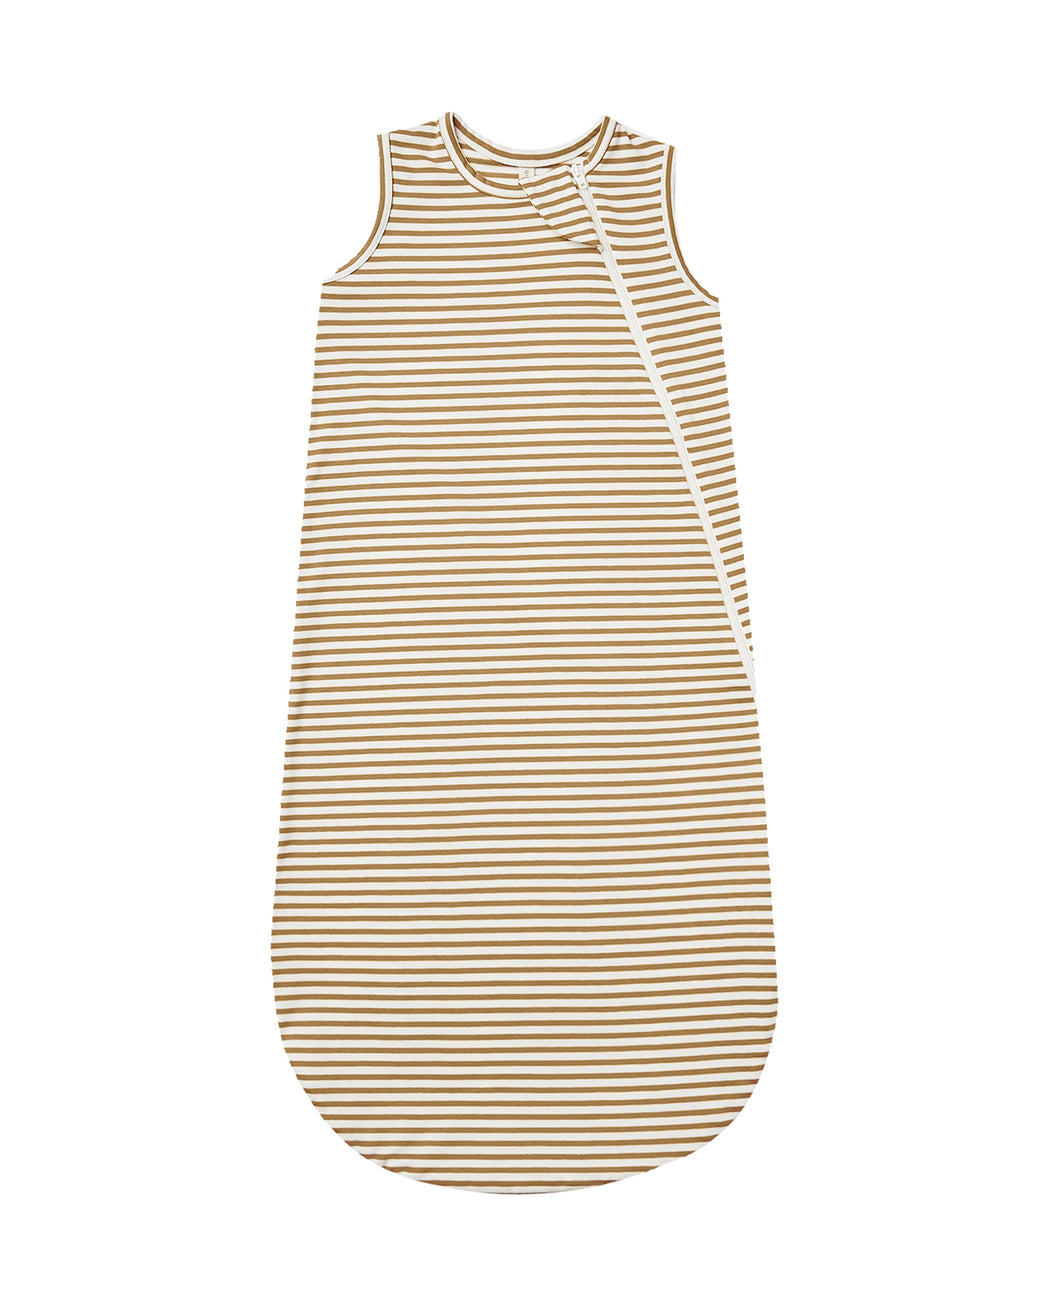 Jersey Sleep Bag – Walnut Stripe